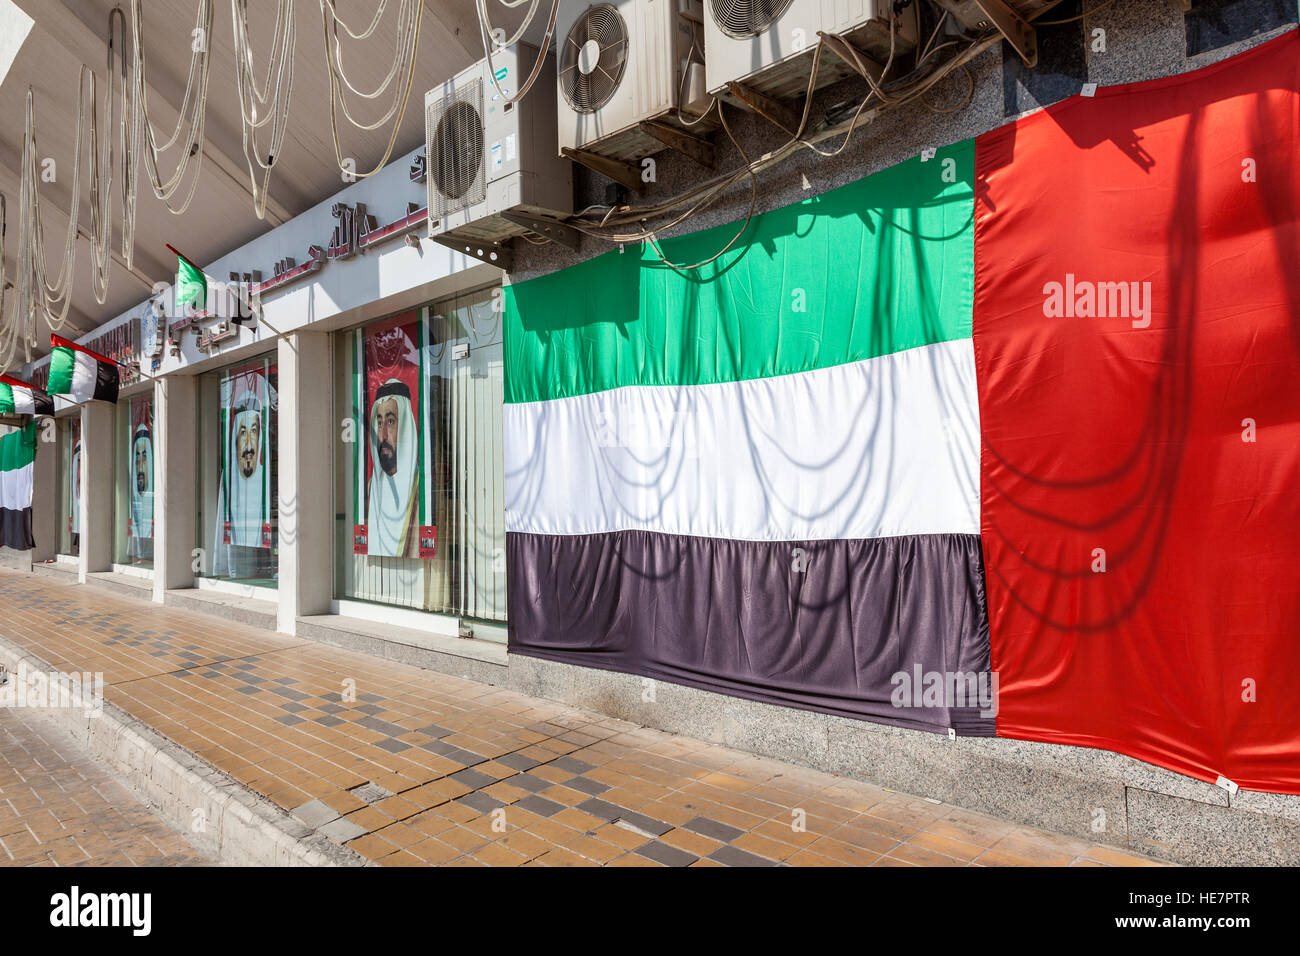 Flagge der Vereinigten Arabischen Emirate Stockfoto